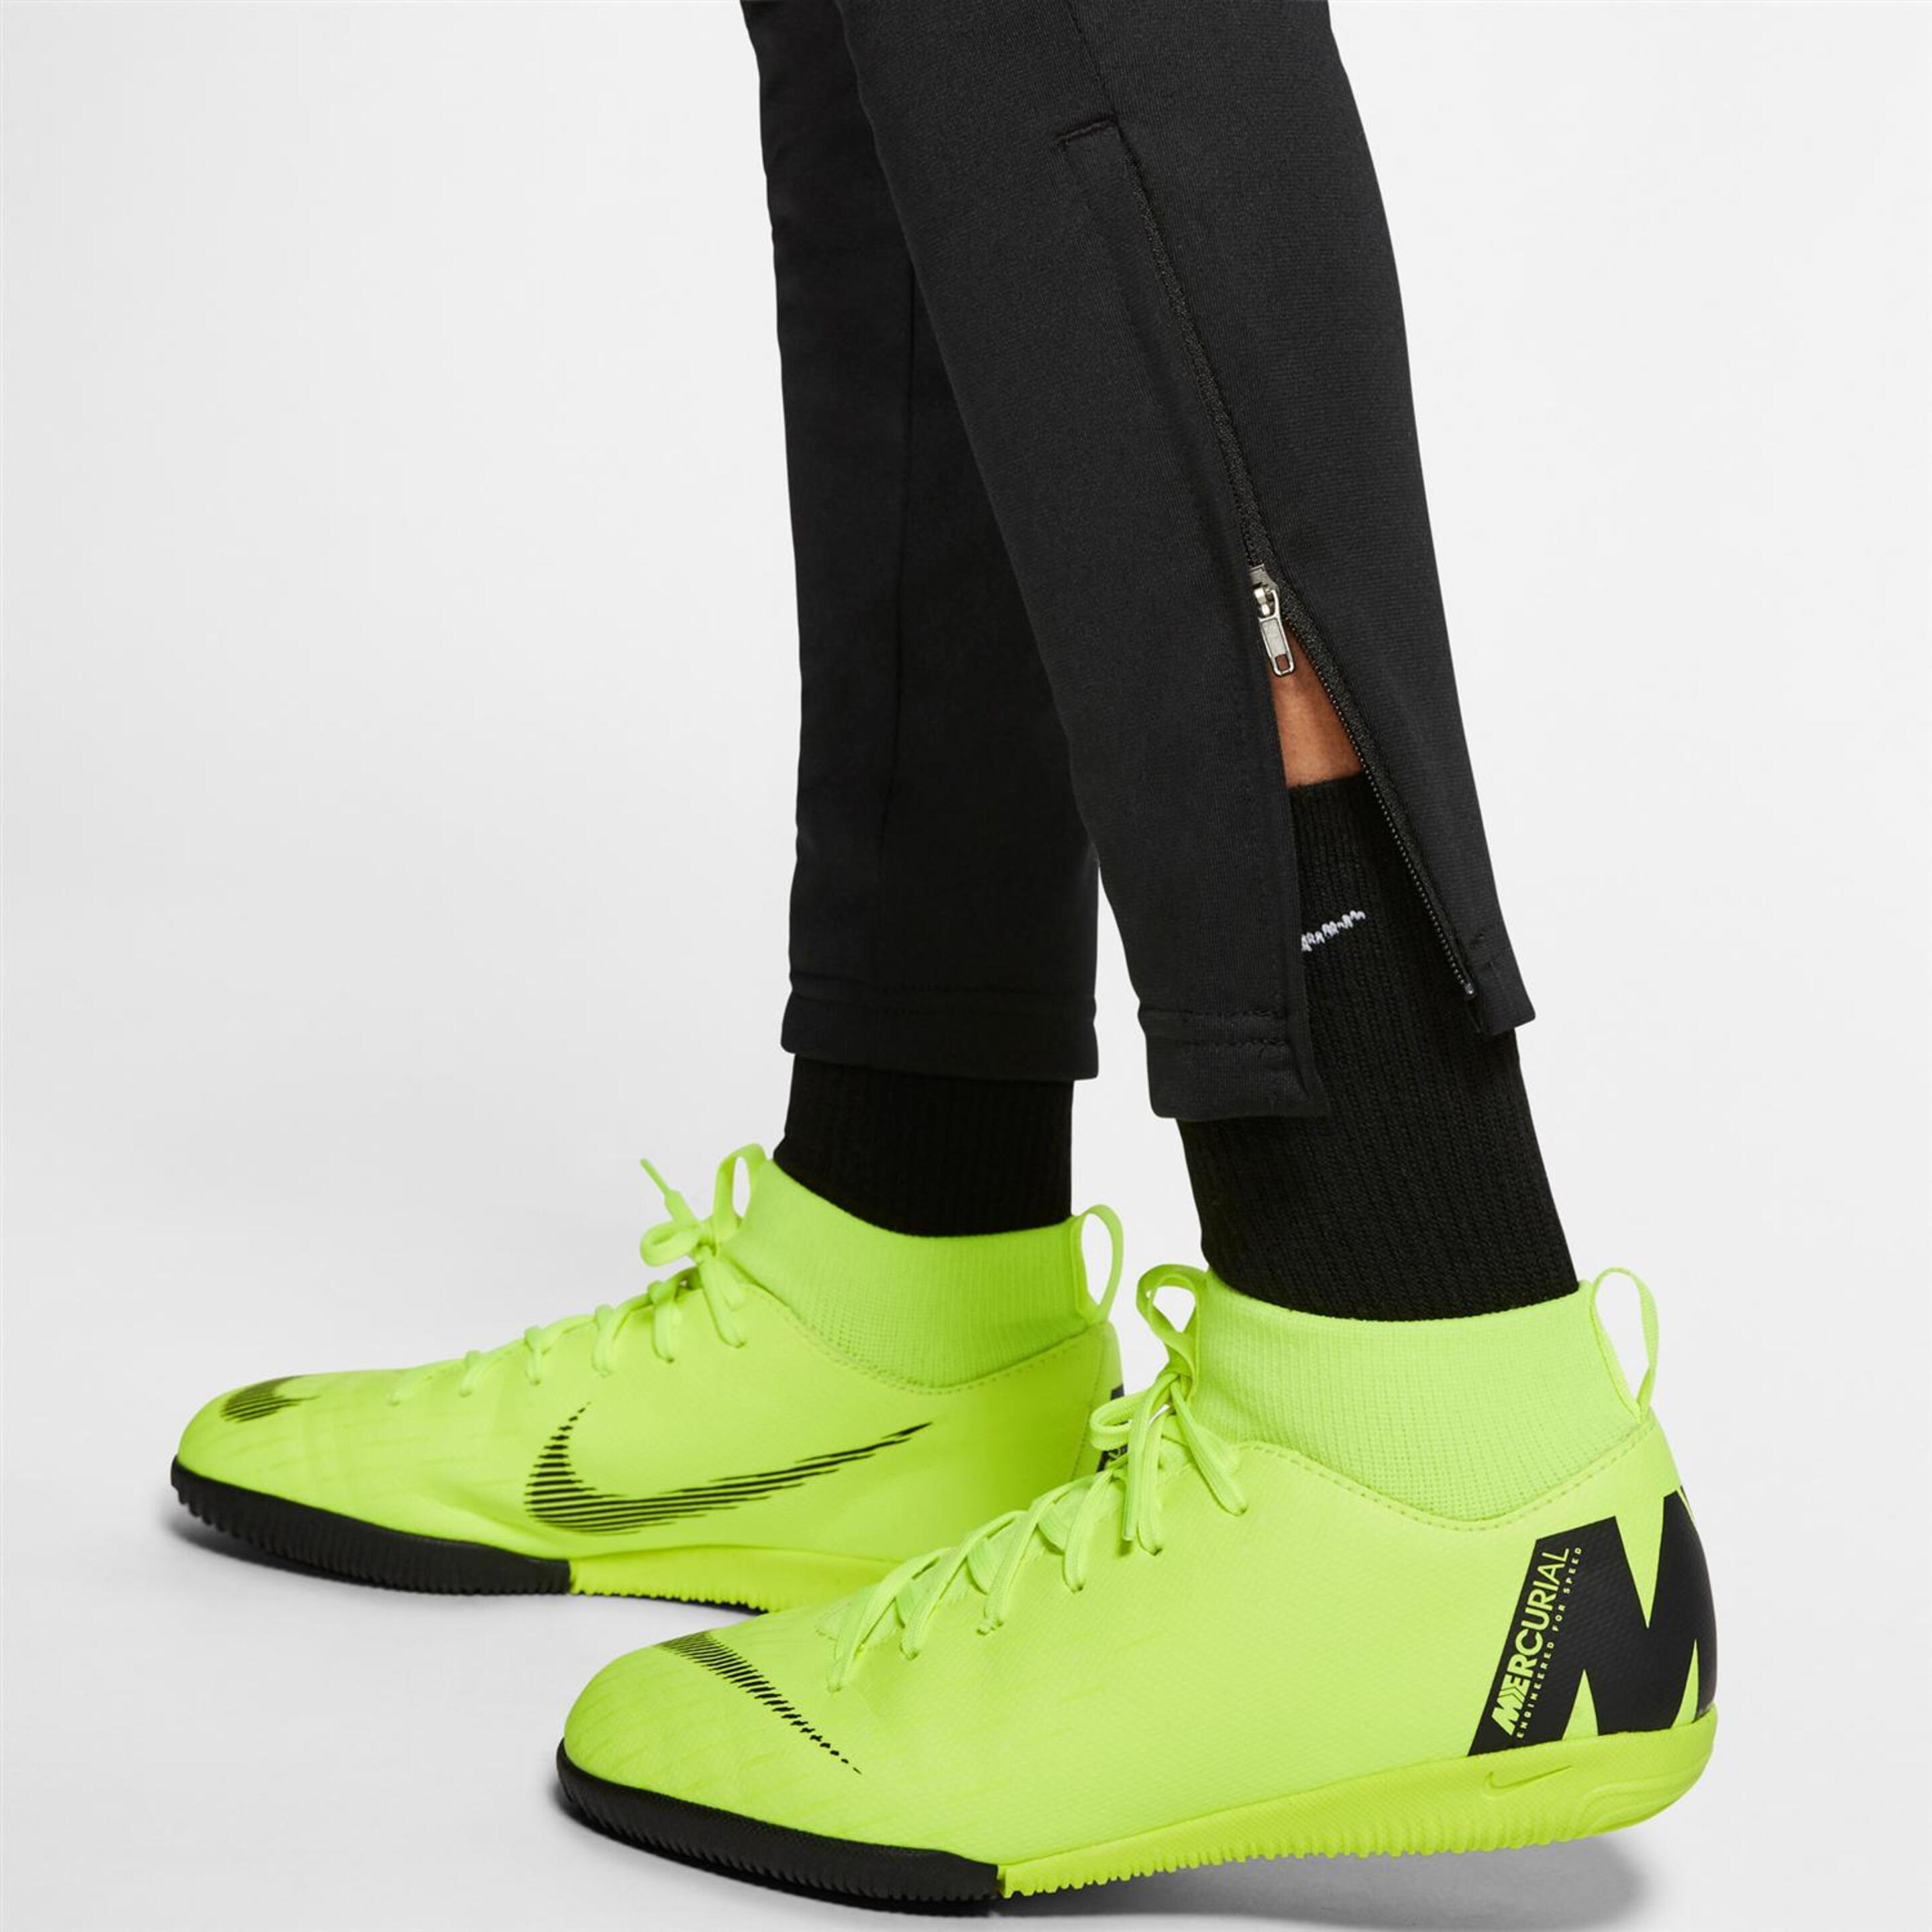 Pantalón Cr7 Nike